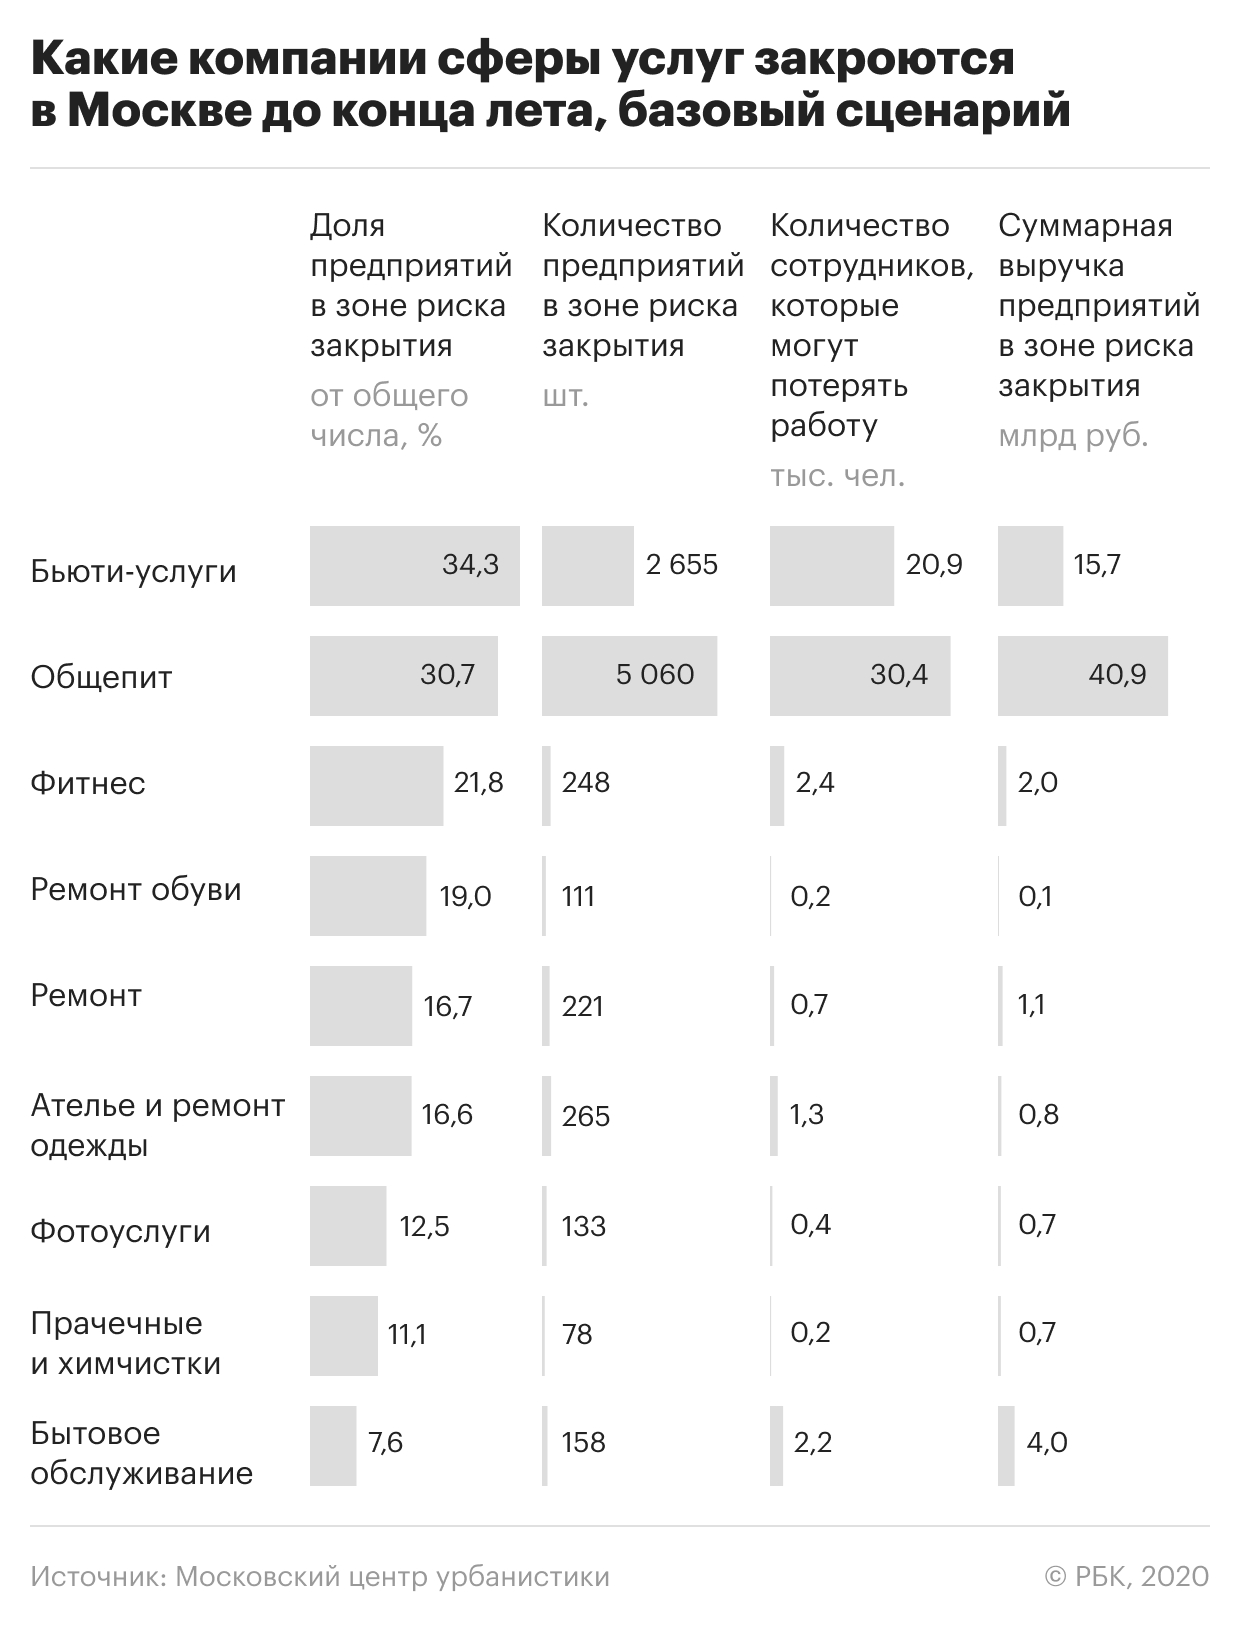 Лето не переживут почти треть компаний сферы услуг в Москве